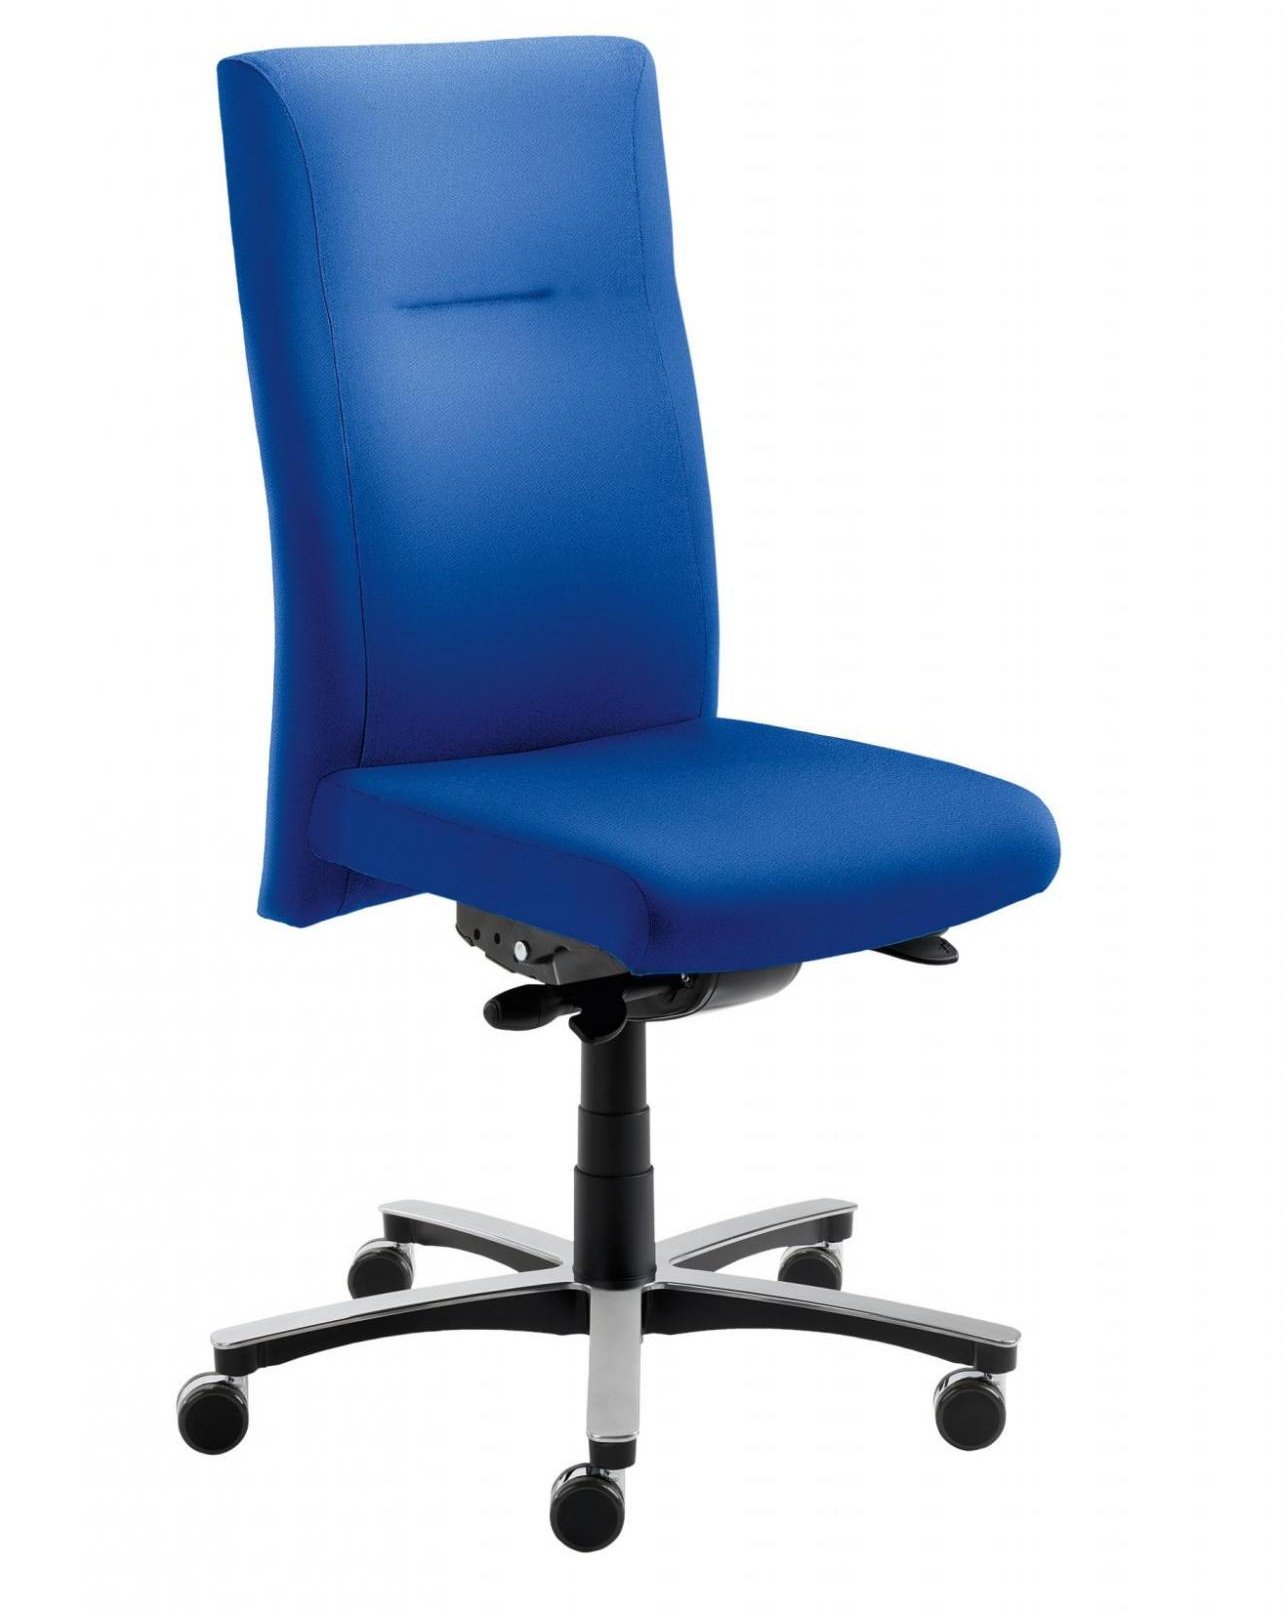 bis 150 Kilogramm belastbarer Schreibtischstuhl mit blauen Sitzbezug